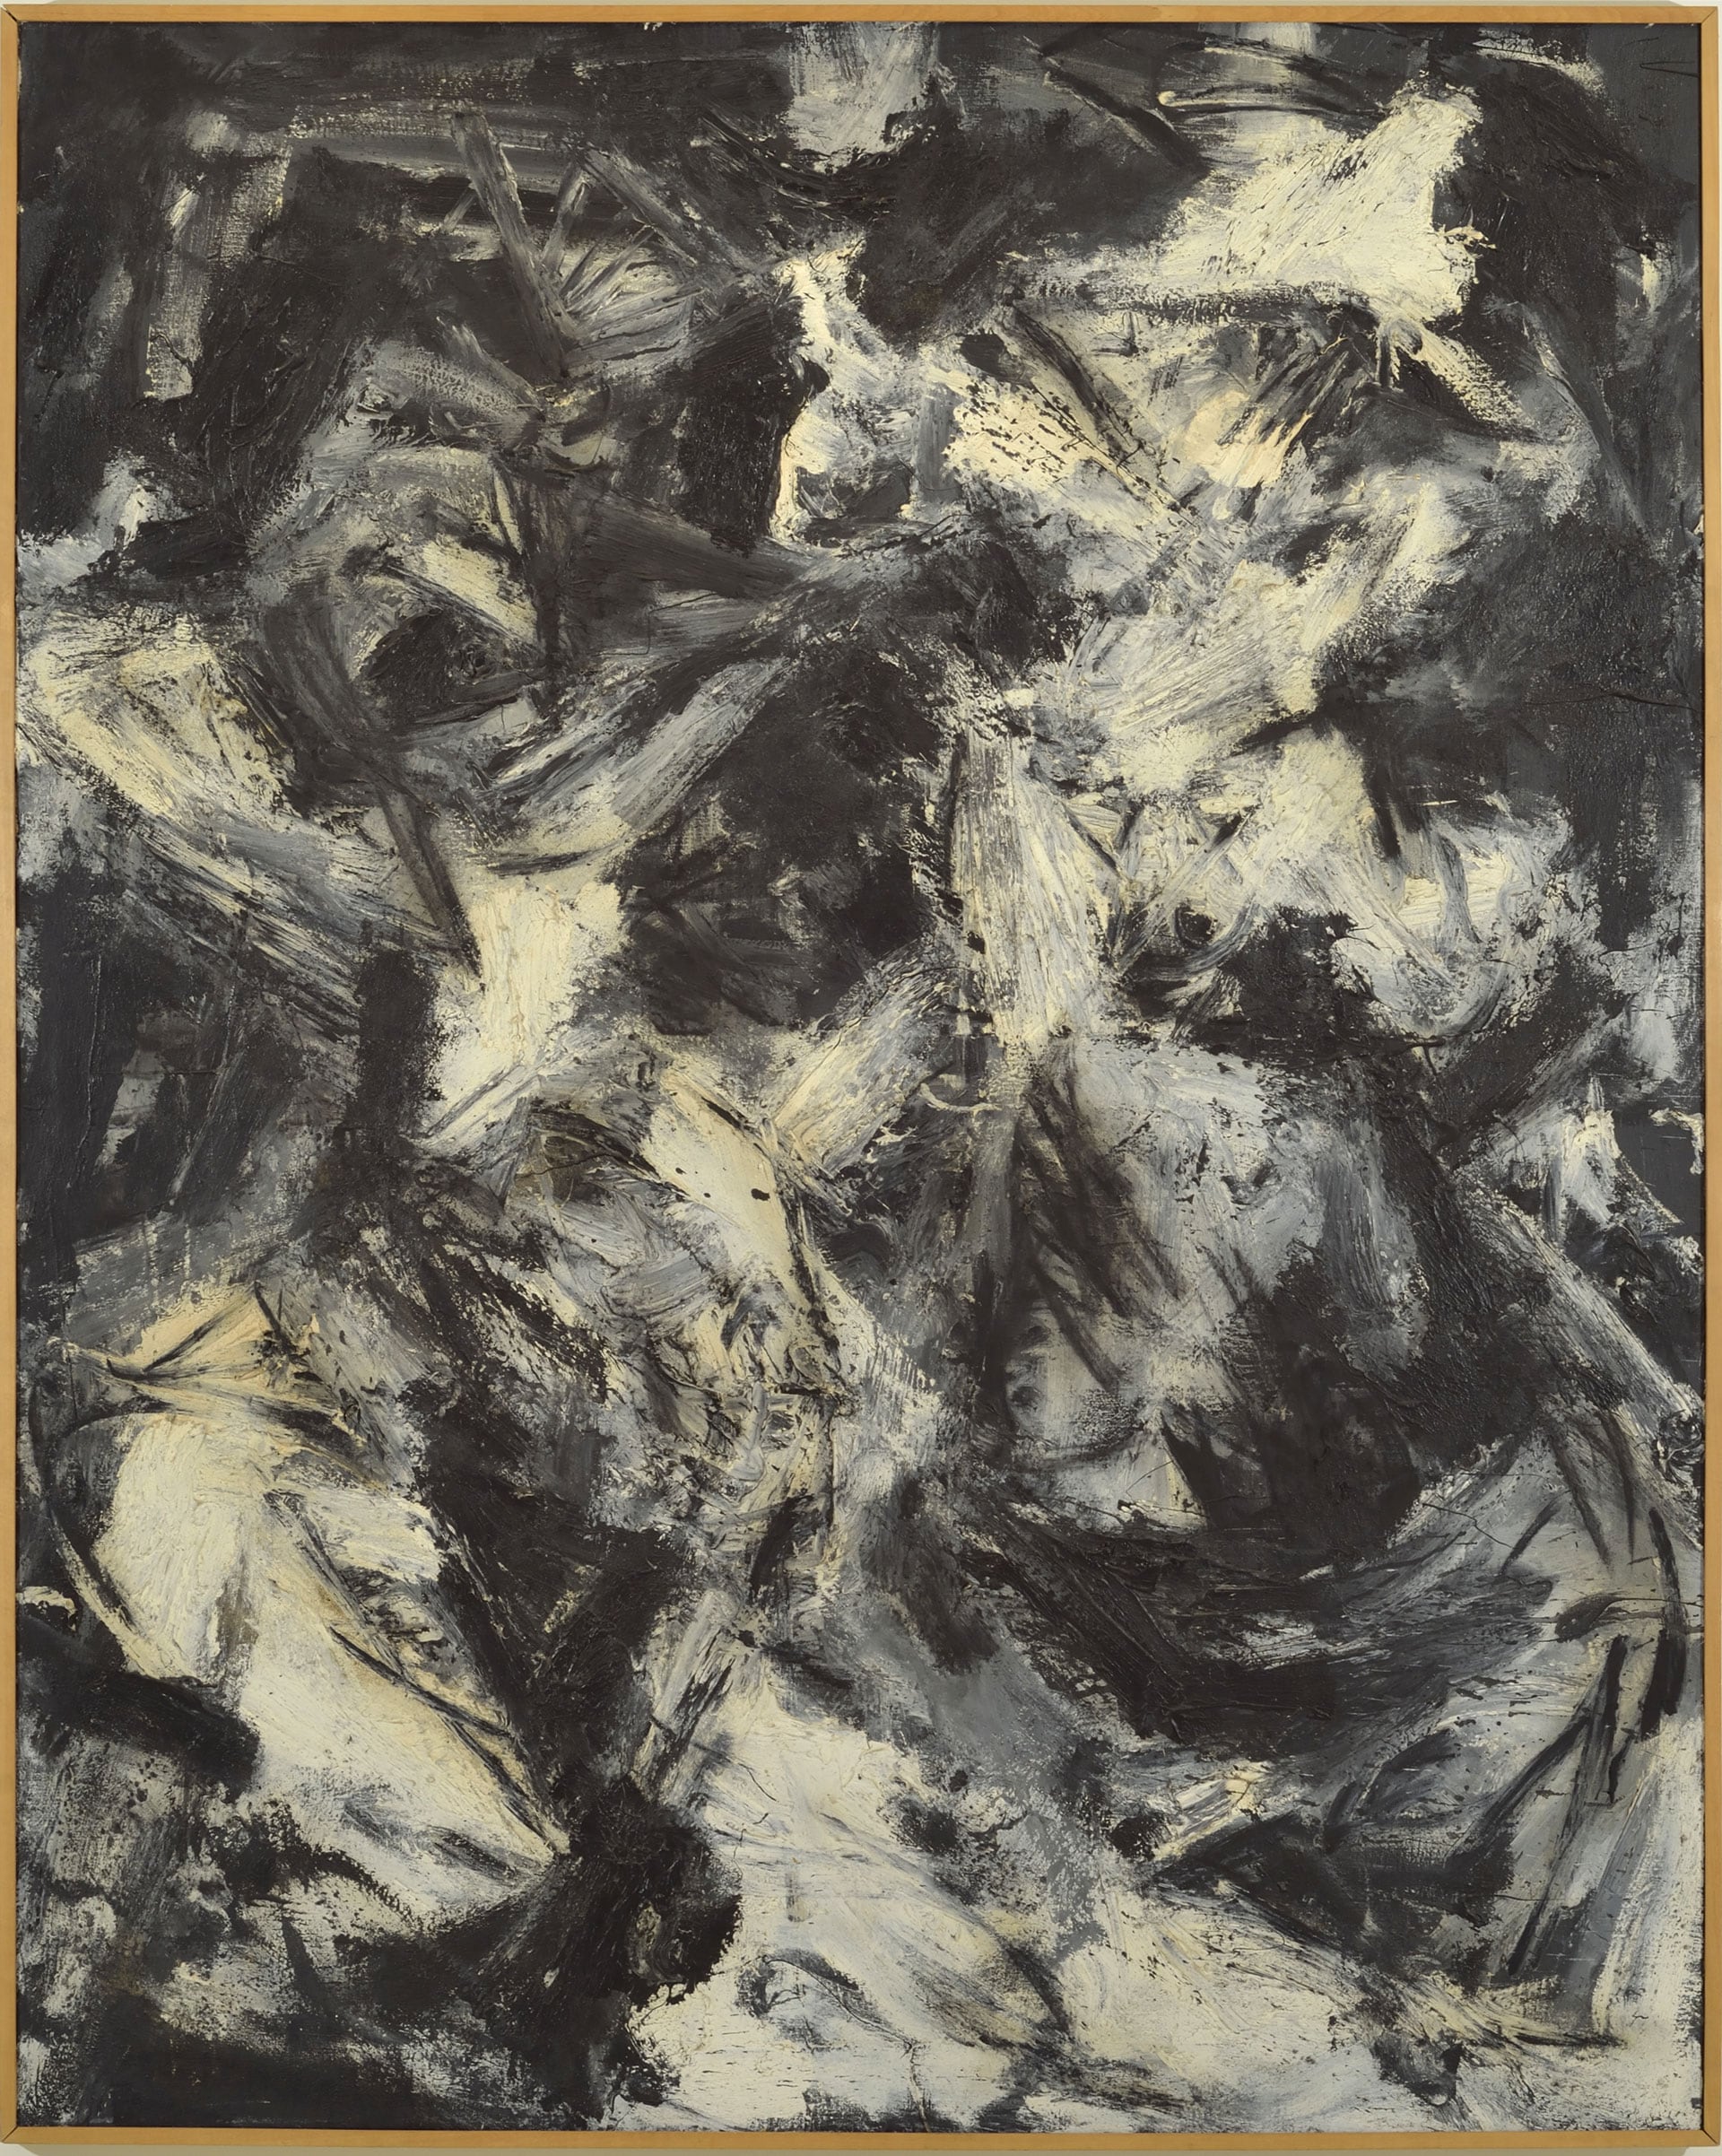 Emilio Vedova (Venezia, 1919 – 2006), Spagna n. 6, 1960. Olio su tela, cm. 185x148